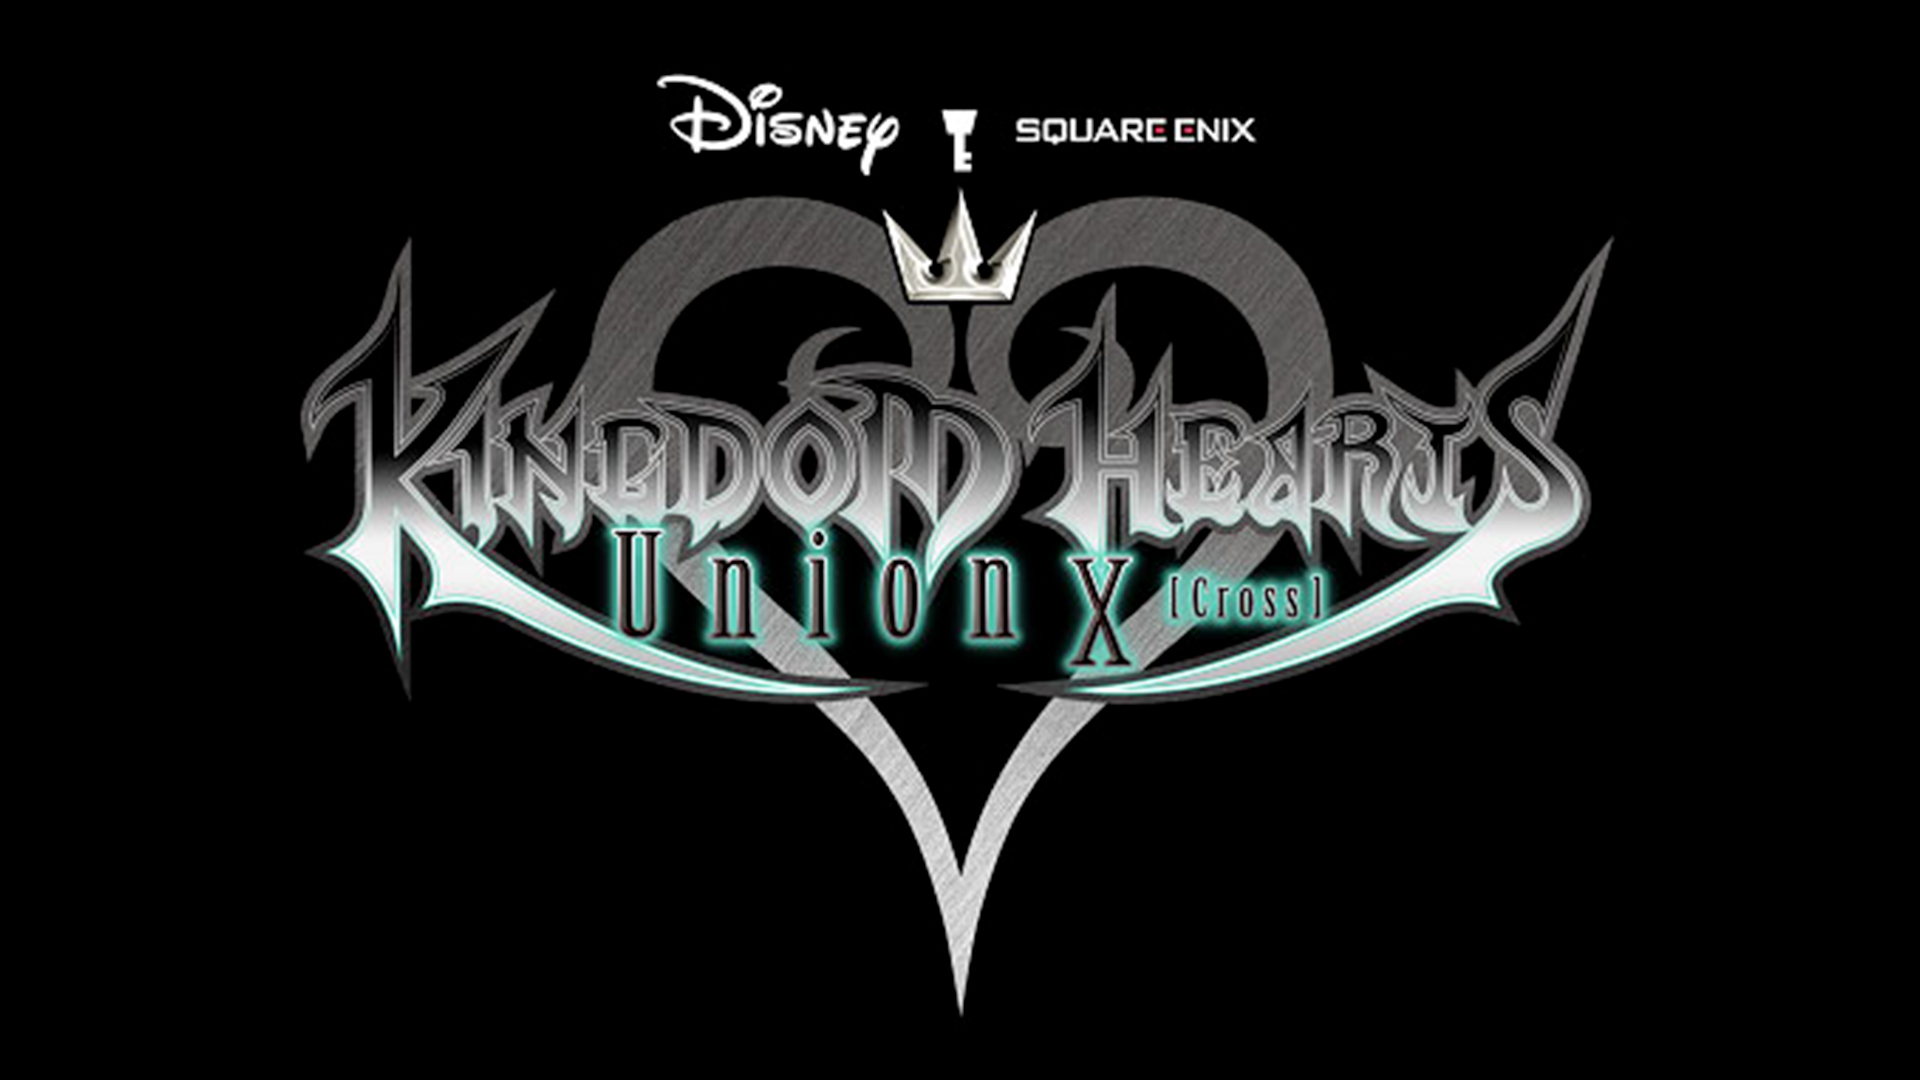 Disney et Square Enix fêtent les 4 ans de Kingdom Hearts Union X[Cross]